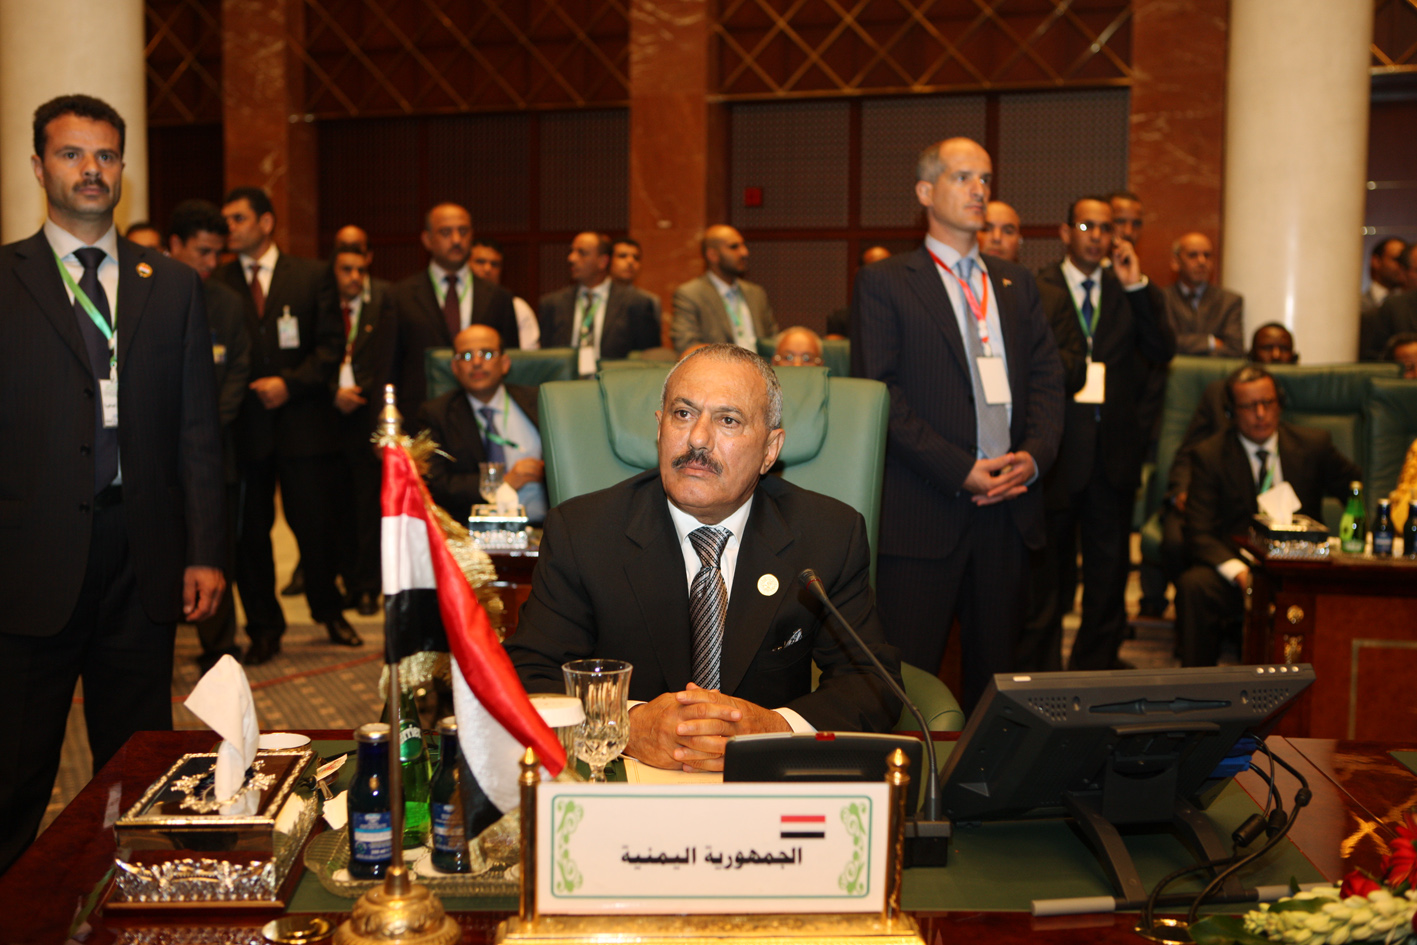 سرت: بدء اعمال القمة العربية الافريقية الثانية، 10-10-2010